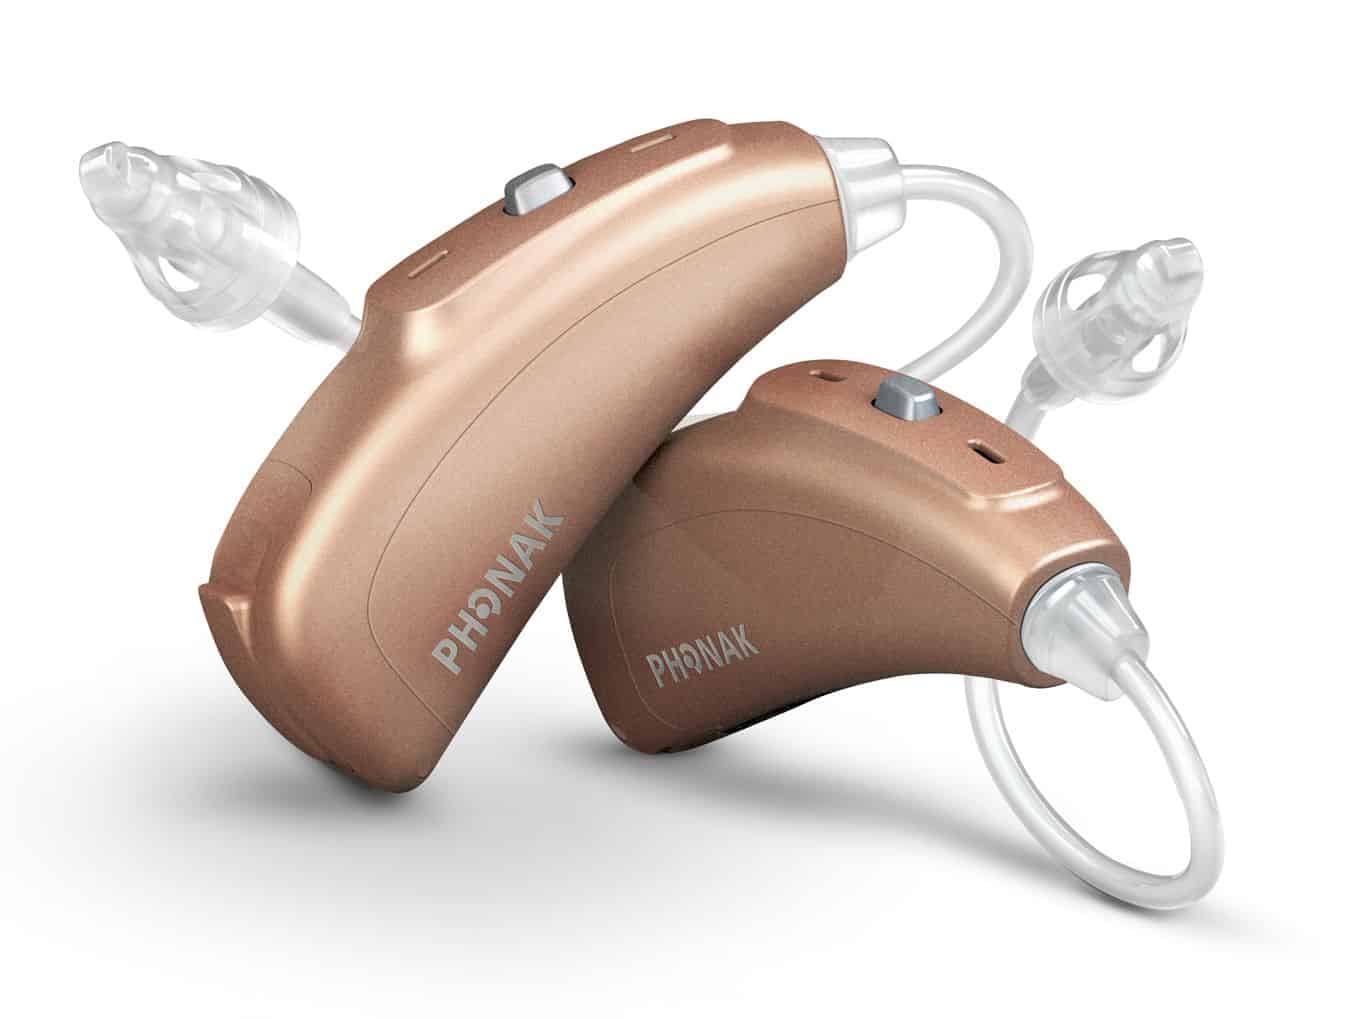 phonak hearing aids tucson oro valley az